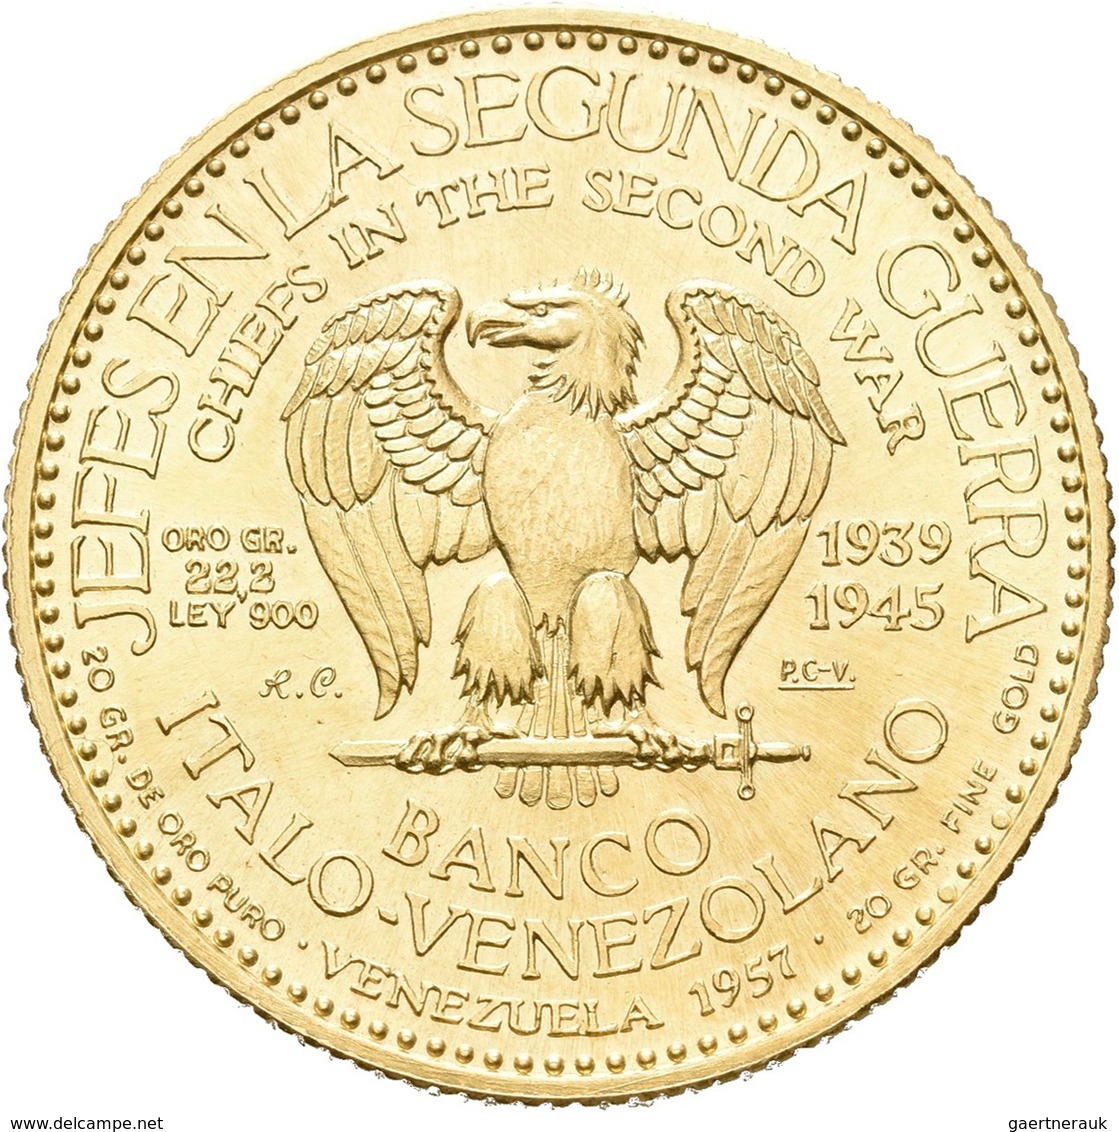 Medaillen Alle Welt: USA: Harry S. Truman, US-Präsident (1884-1972); Goldmedaille 1957 Der Banco Ita - Ohne Zuordnung